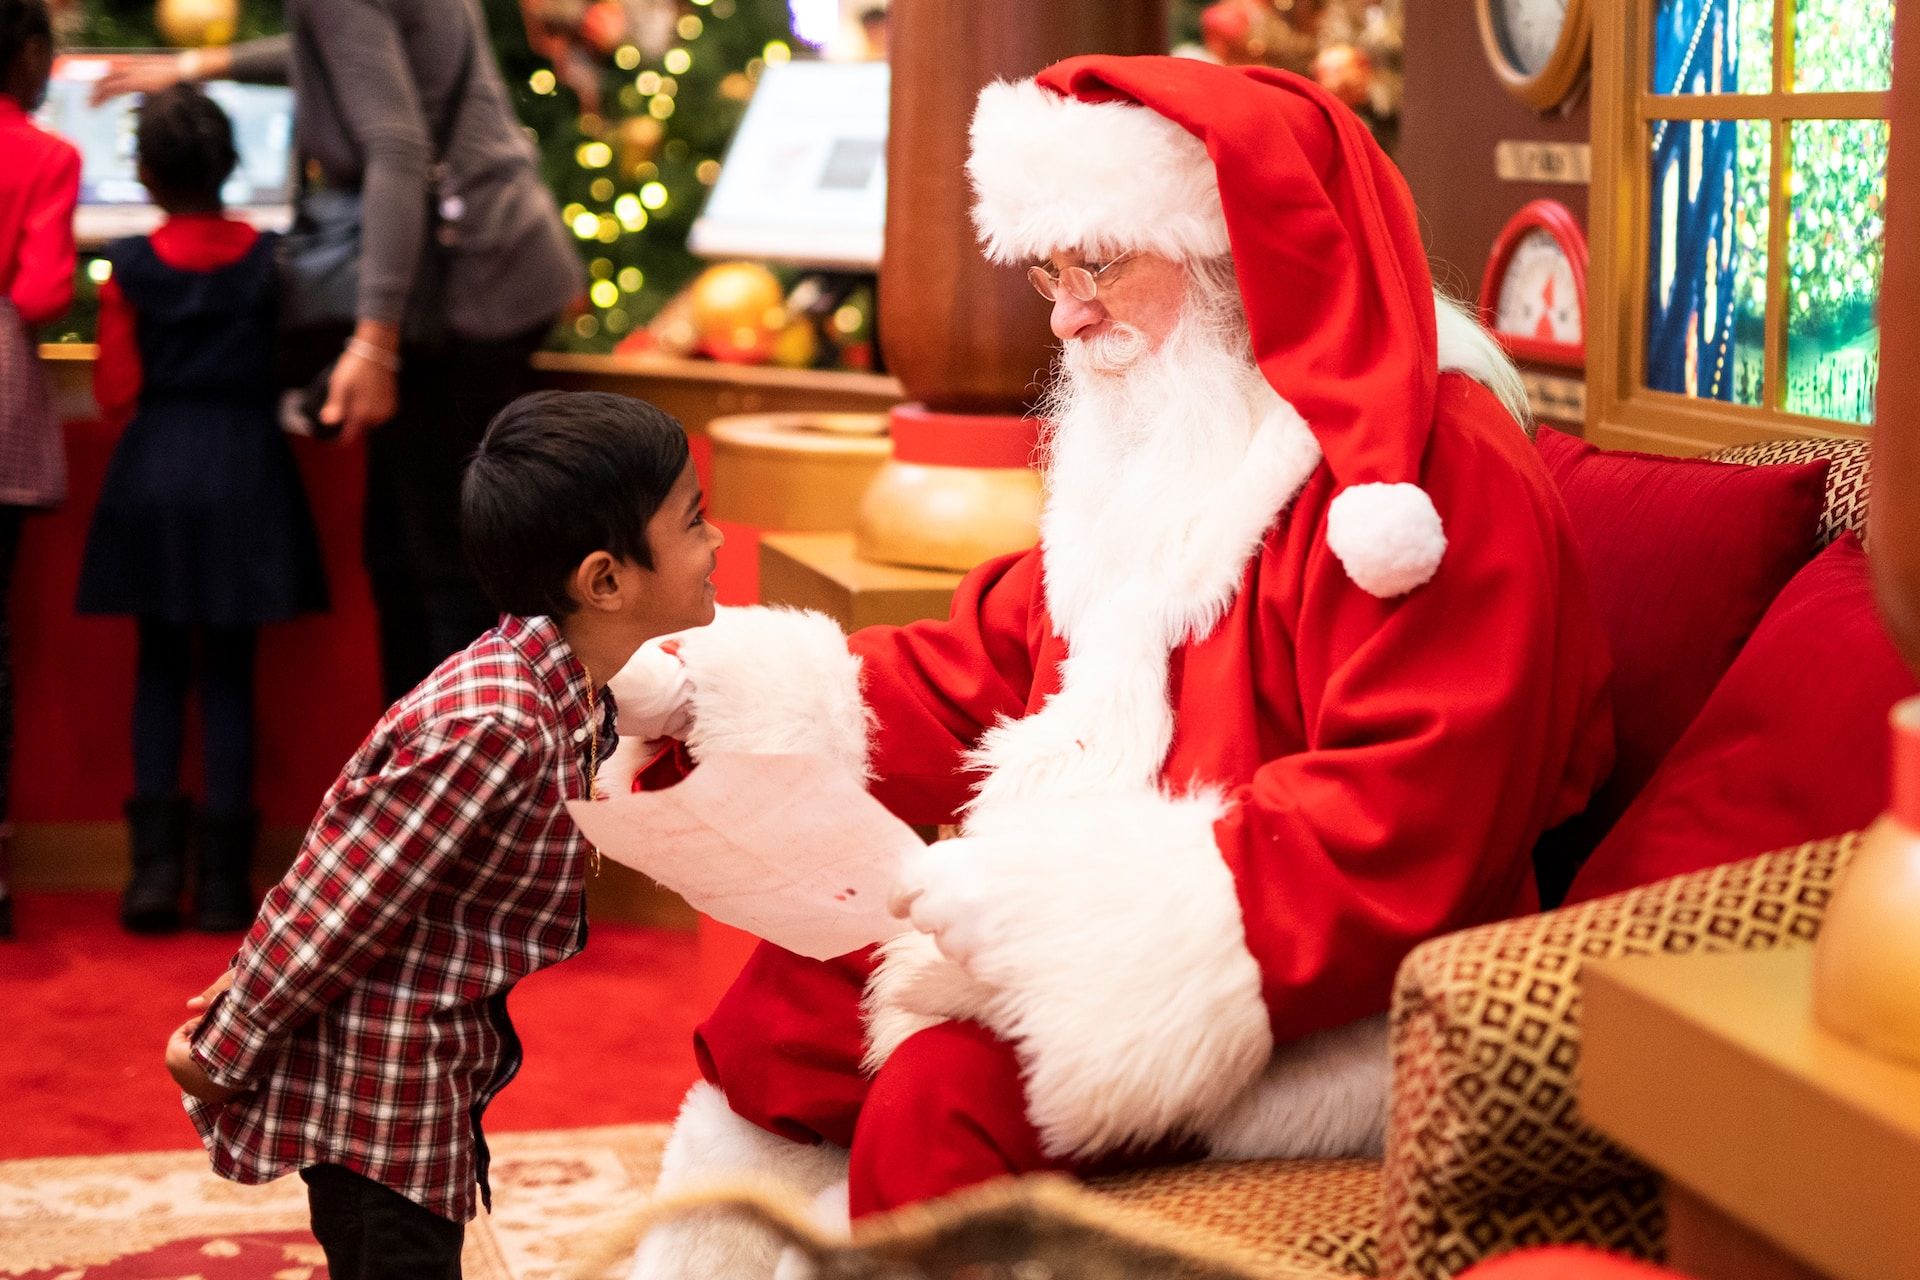 Le Père Noël lisant la liste de cadeau demandée par un enfant sur https://unsplash.com/fr/photos/garcon-debout-devant-un-homme-portant-un-costume-de-pere-noel-YZZz0_MfHto